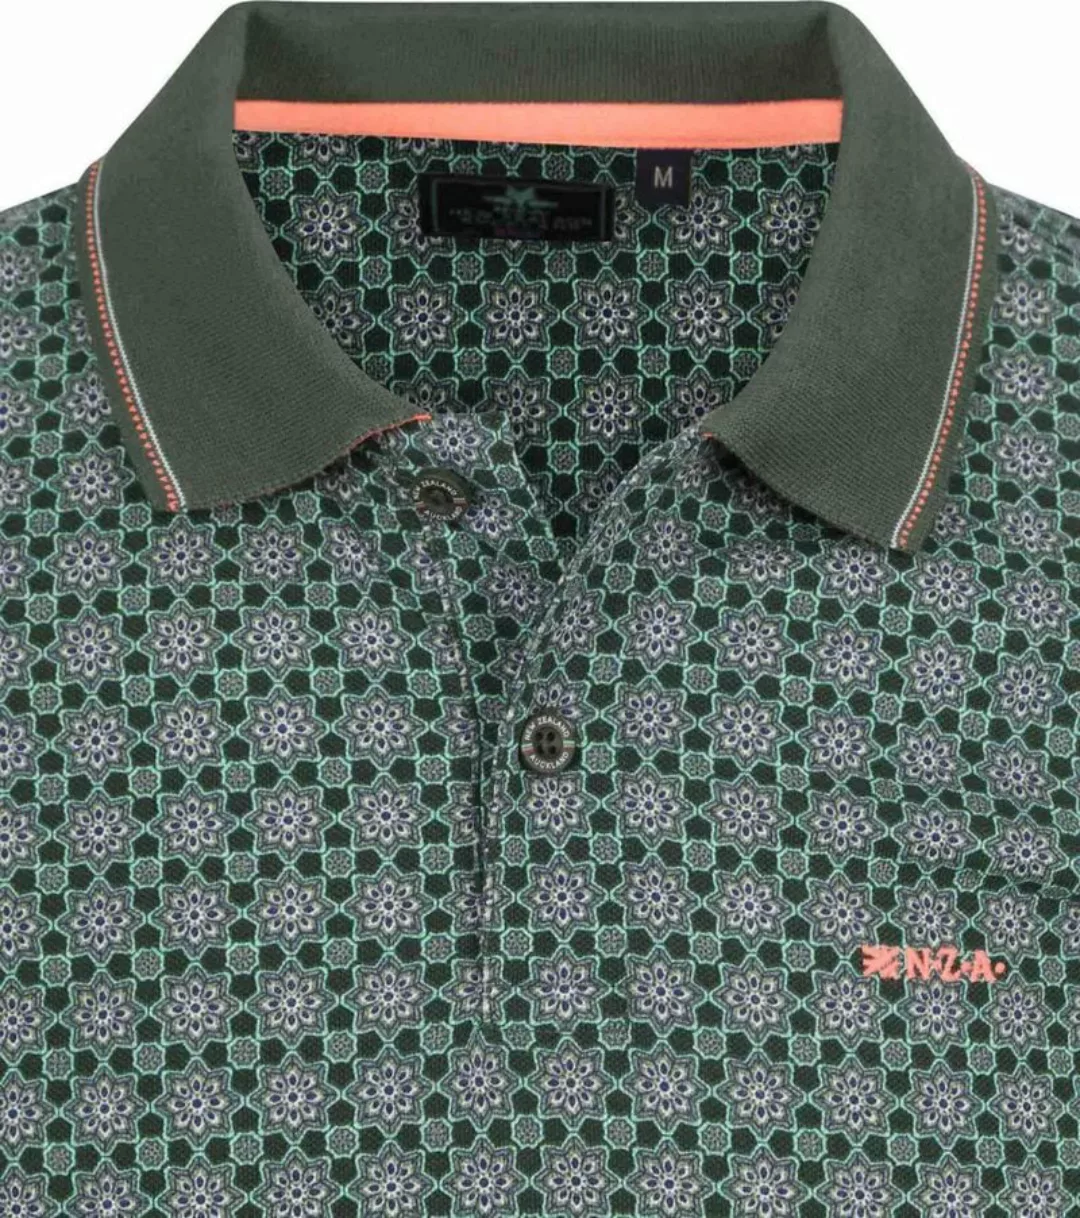 NZA Poloshirt Wisely Grün - Größe XL günstig online kaufen